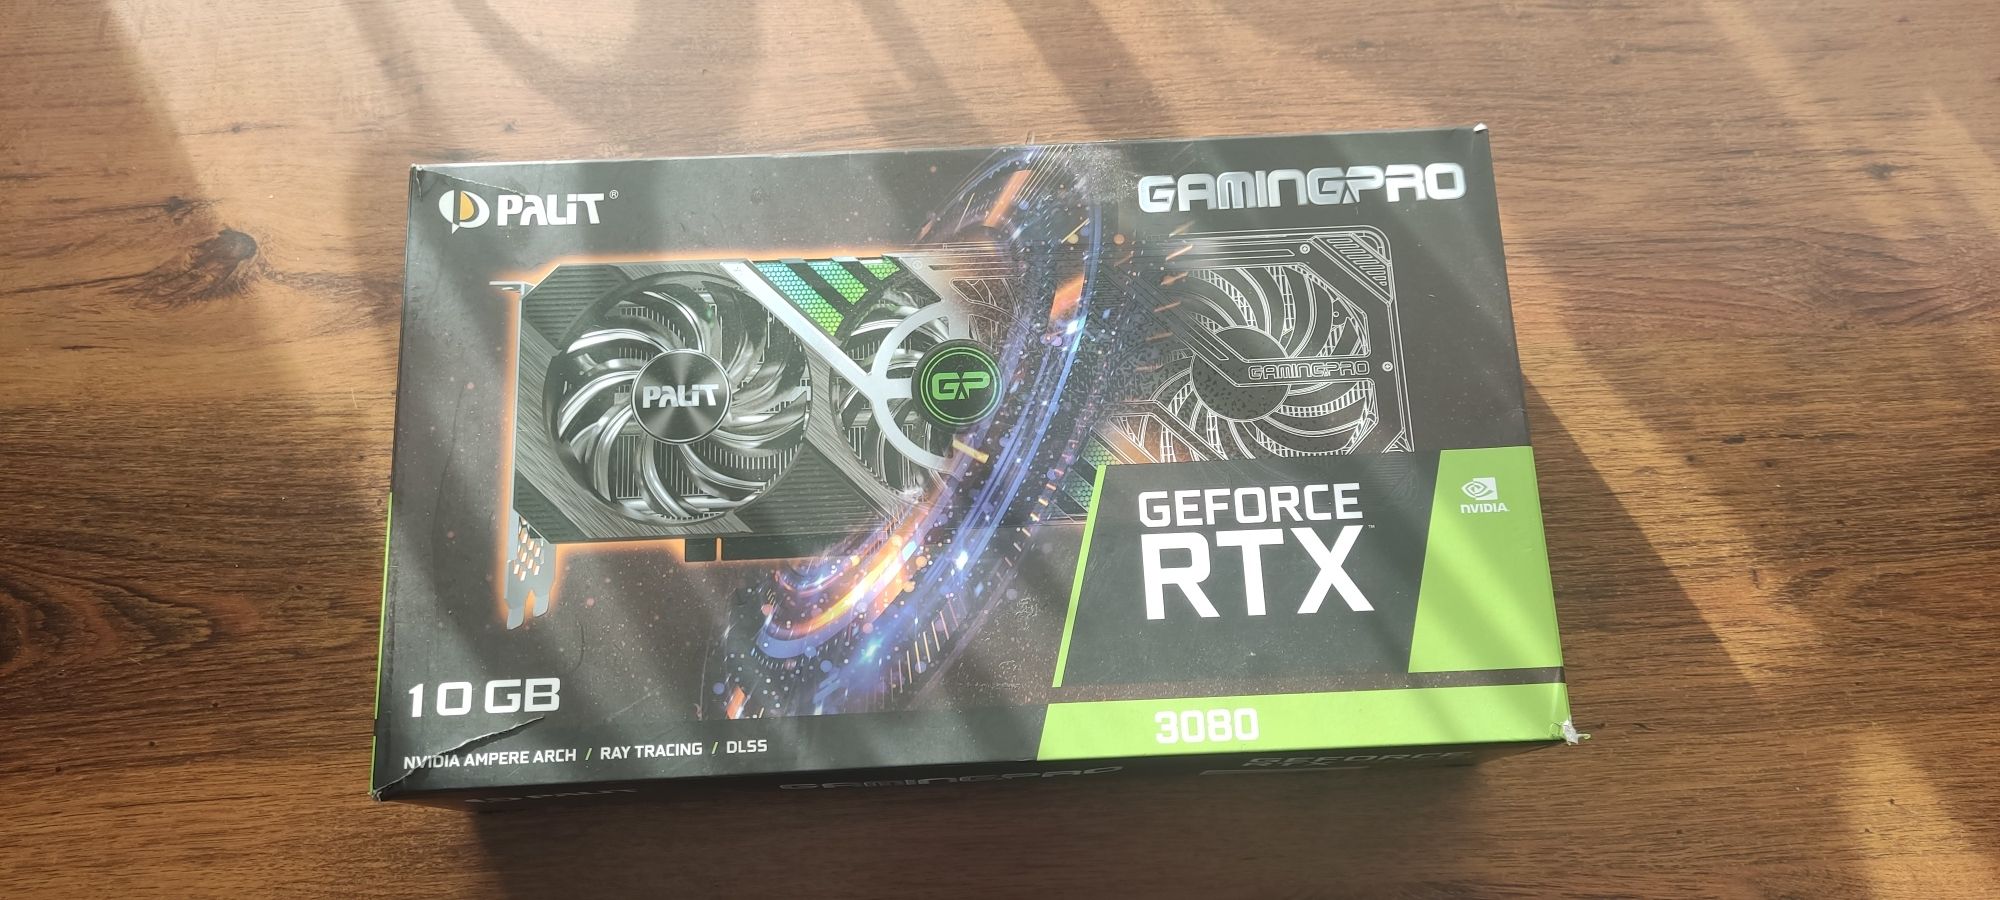 Palit GeForce RTX 3080 Gaming Pro